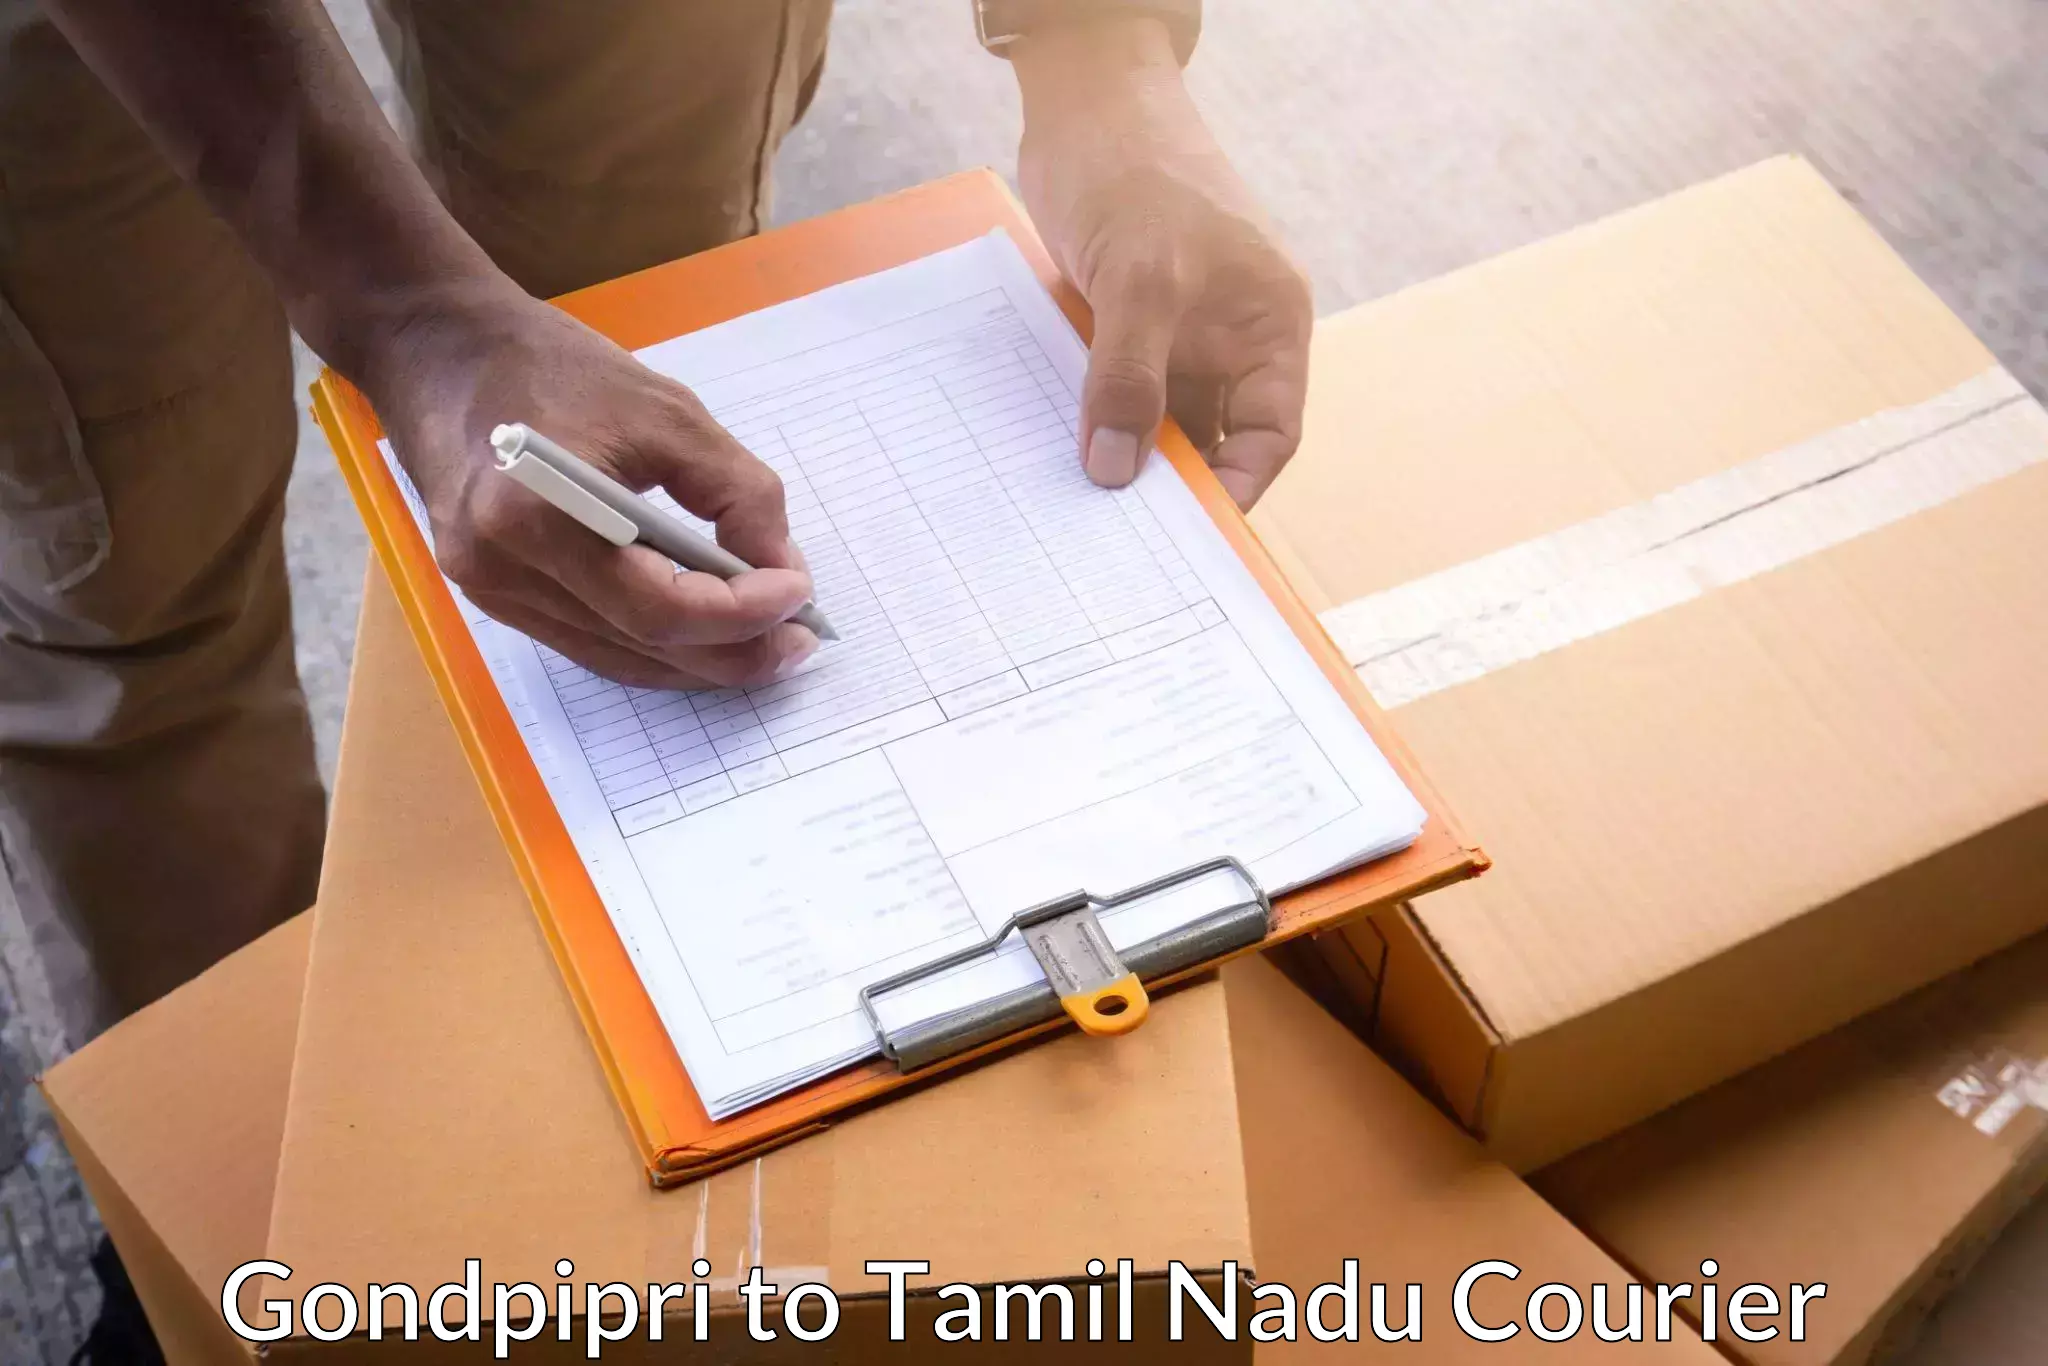 Small business couriers Gondpipri to Srirangam